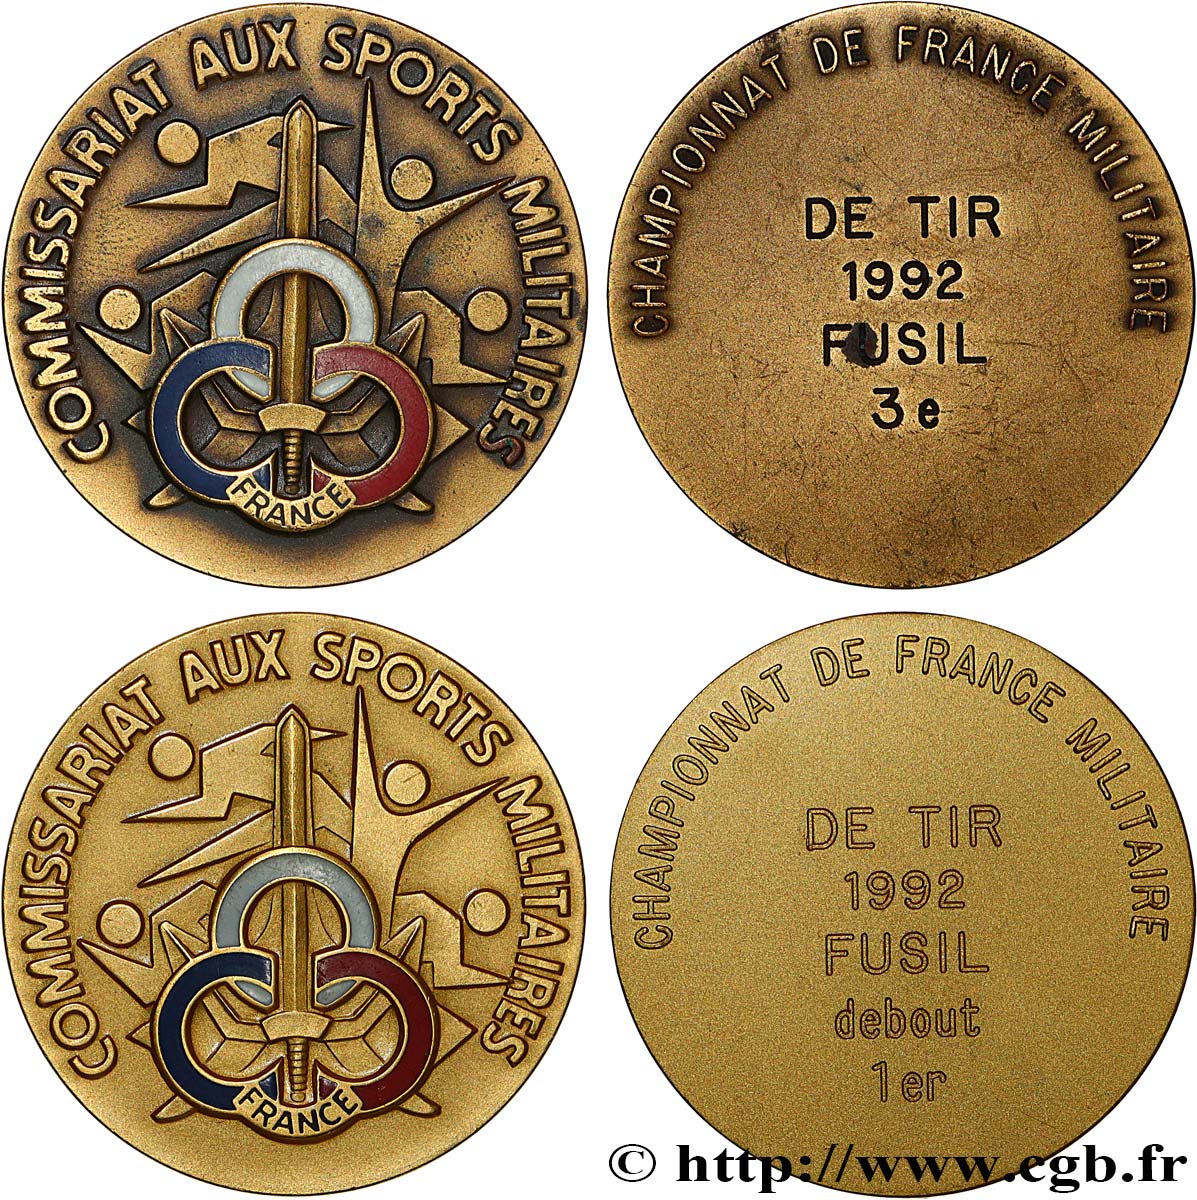 TIR ET ARQUEBUSE Médaille, Commissariat aux sports militaires, Lot de 2 exemplaires SUP